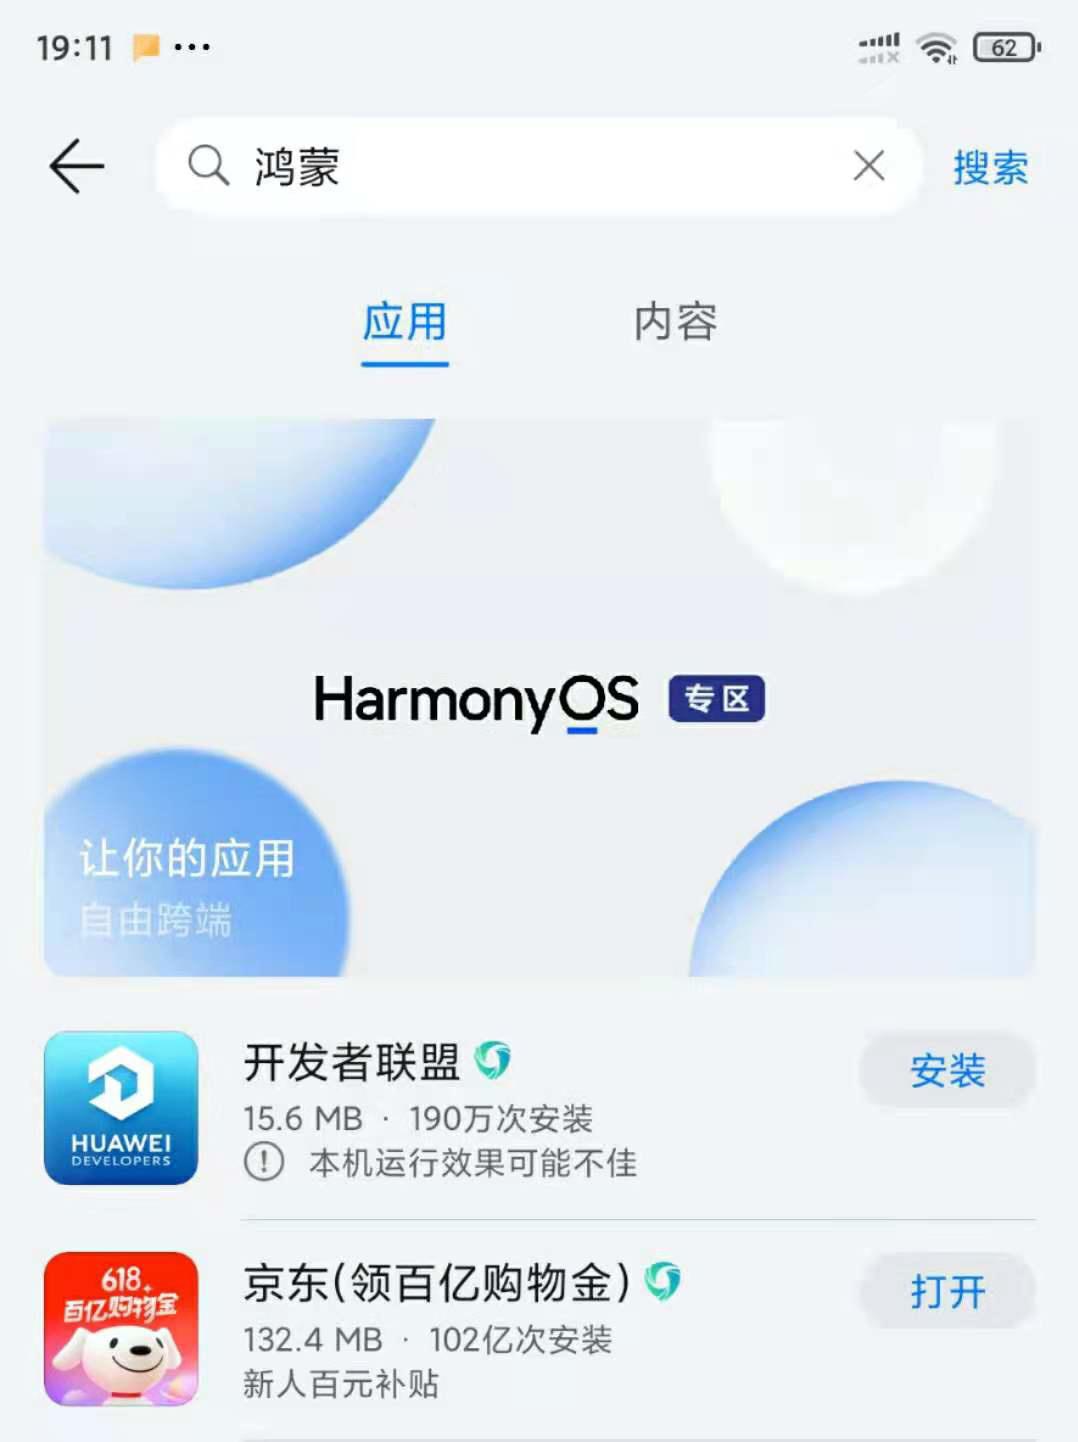 华为应用市场app下载官网 华为应用市场正式上线鸿蒙 HarmonyOS 专区：让你的应用自由跨端